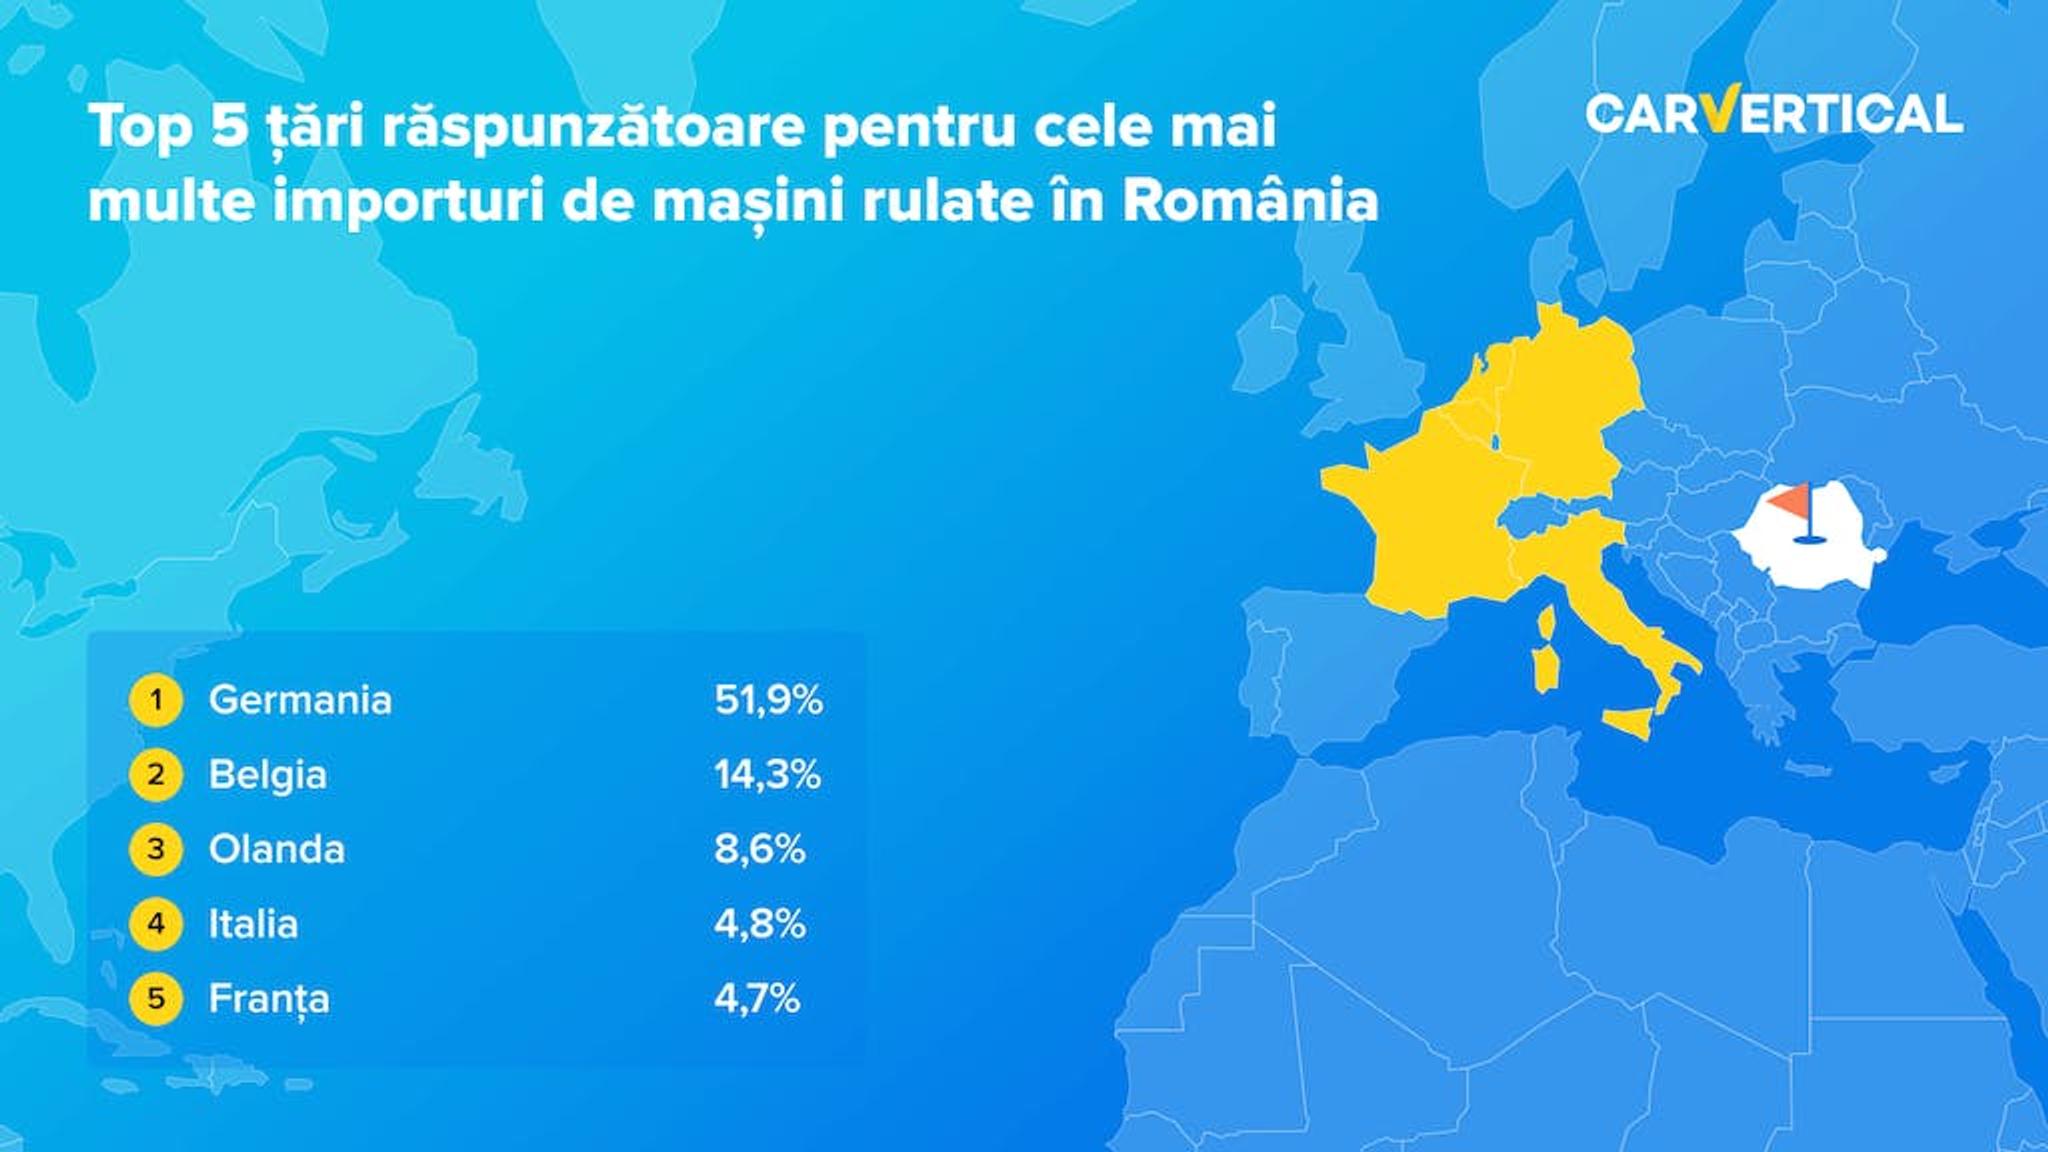 Top 5 tari raspunzatoare pentru cele main multe importuri de masini rulate in Romania